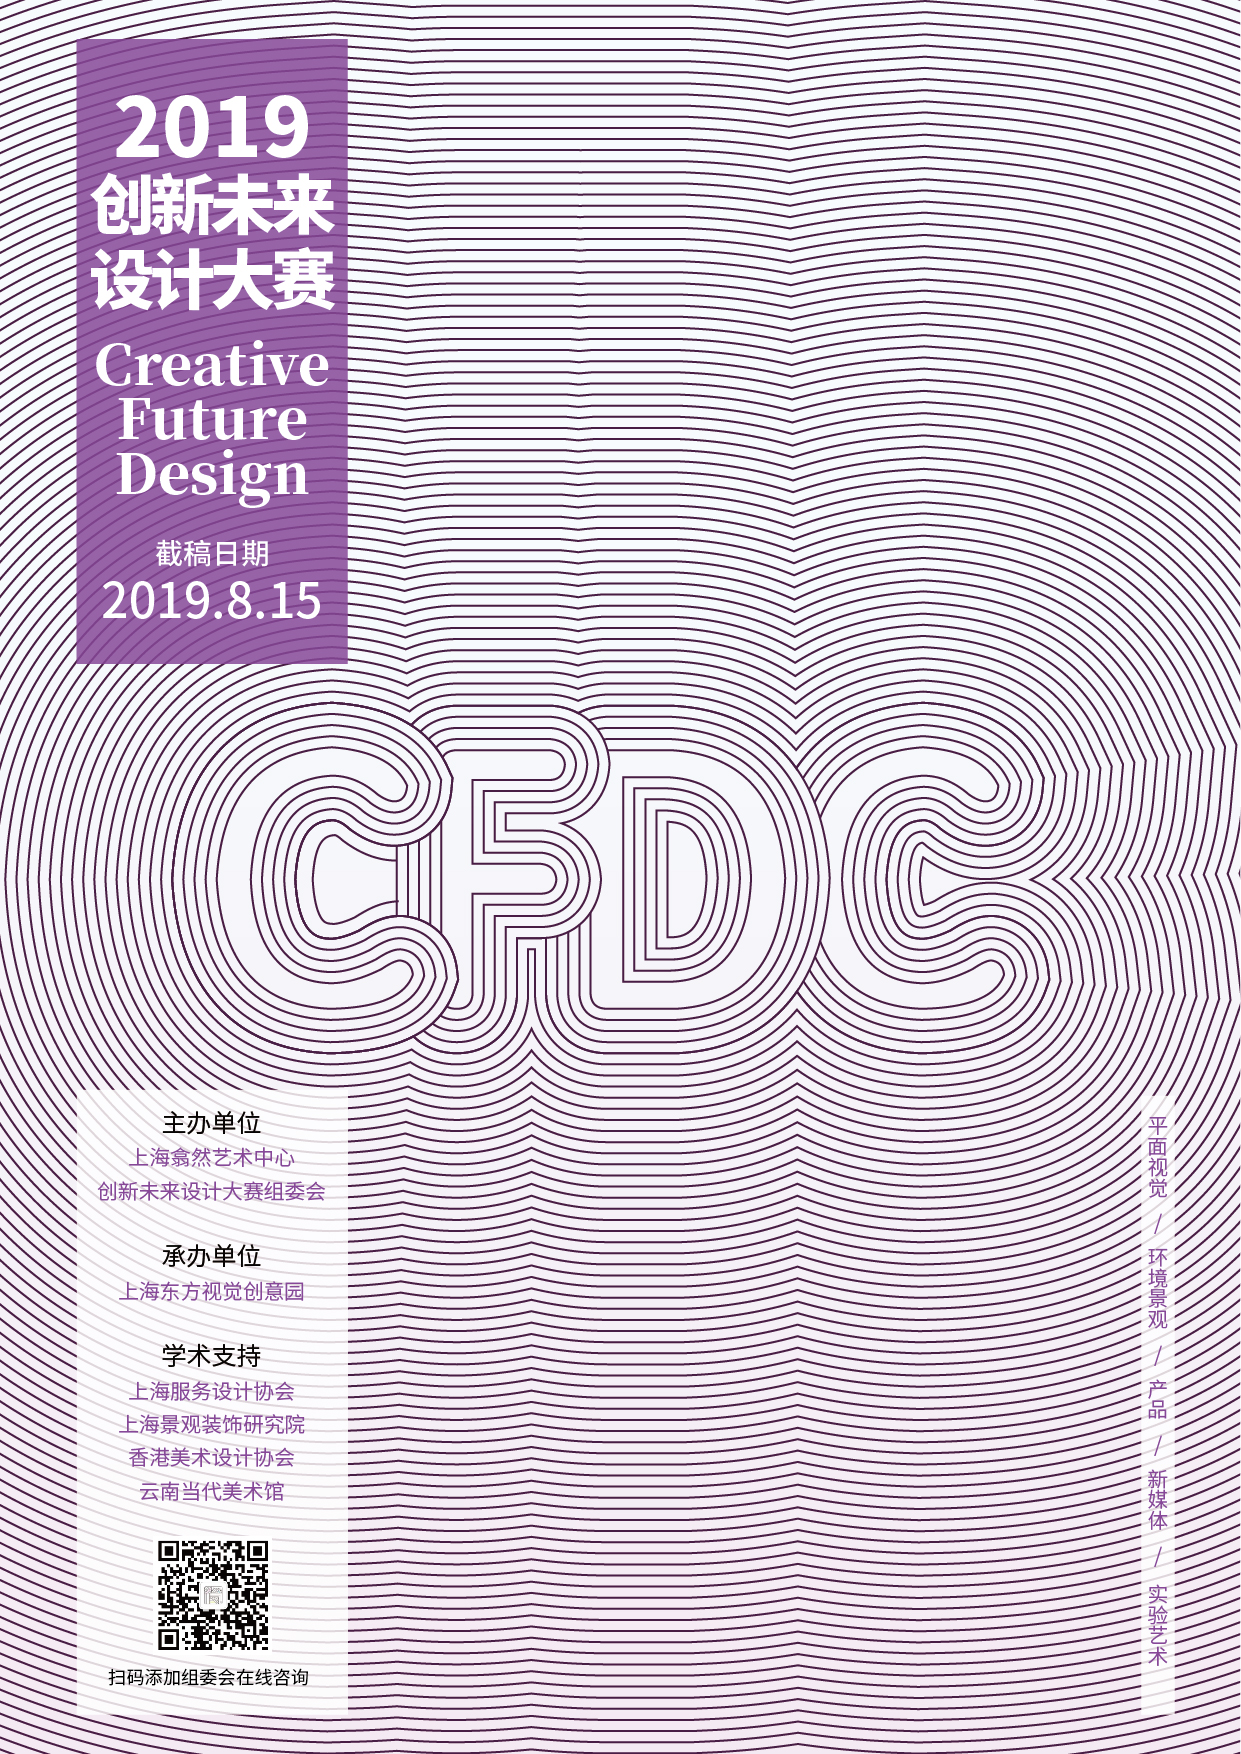 2019创新未来设计大赛暨未来设计艺术展